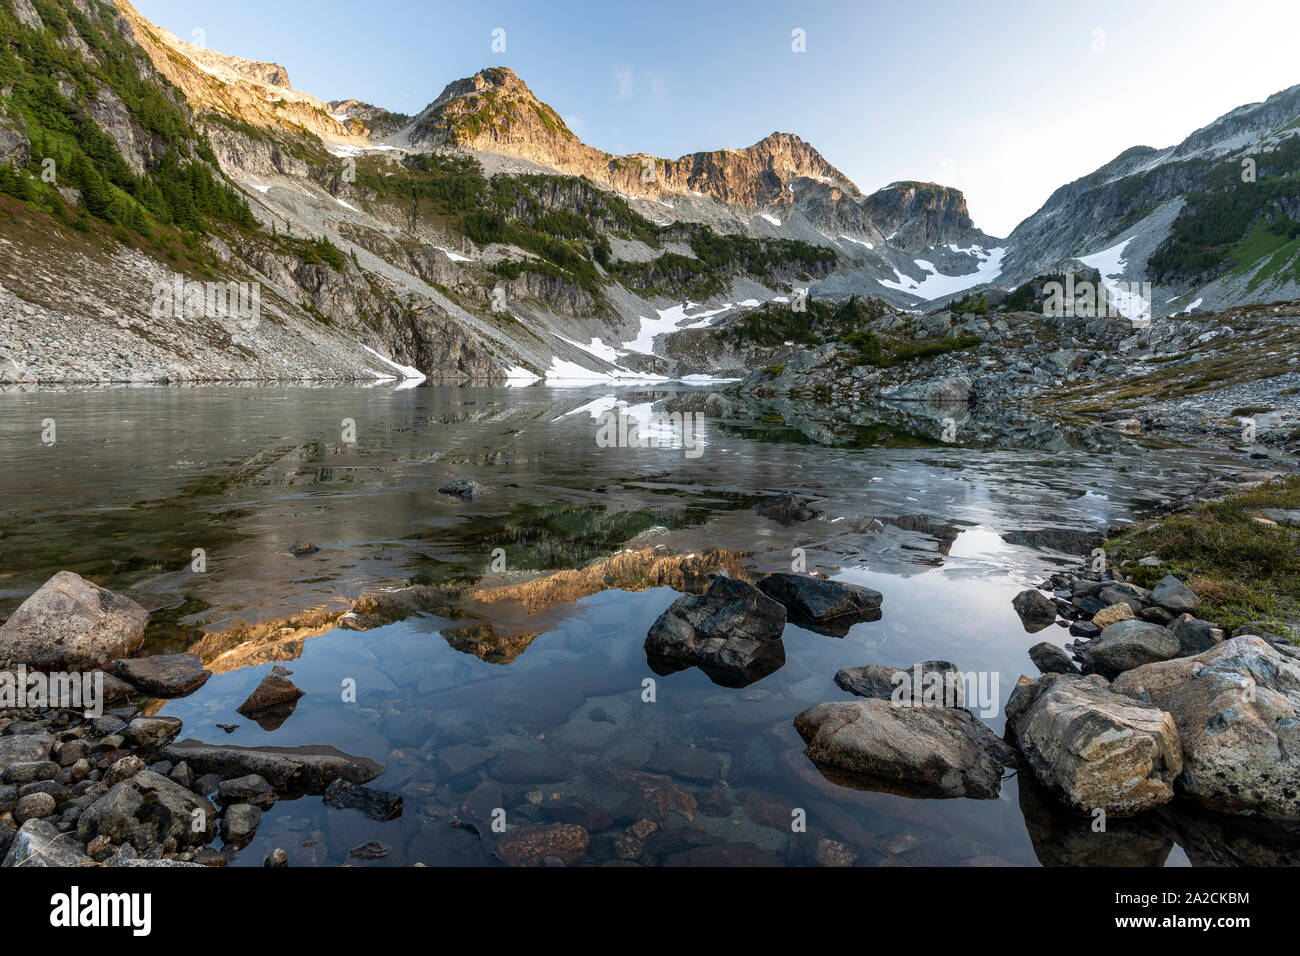 Vista panorámica de un pico de montaña y su reflejo en un lago. Foto de stock